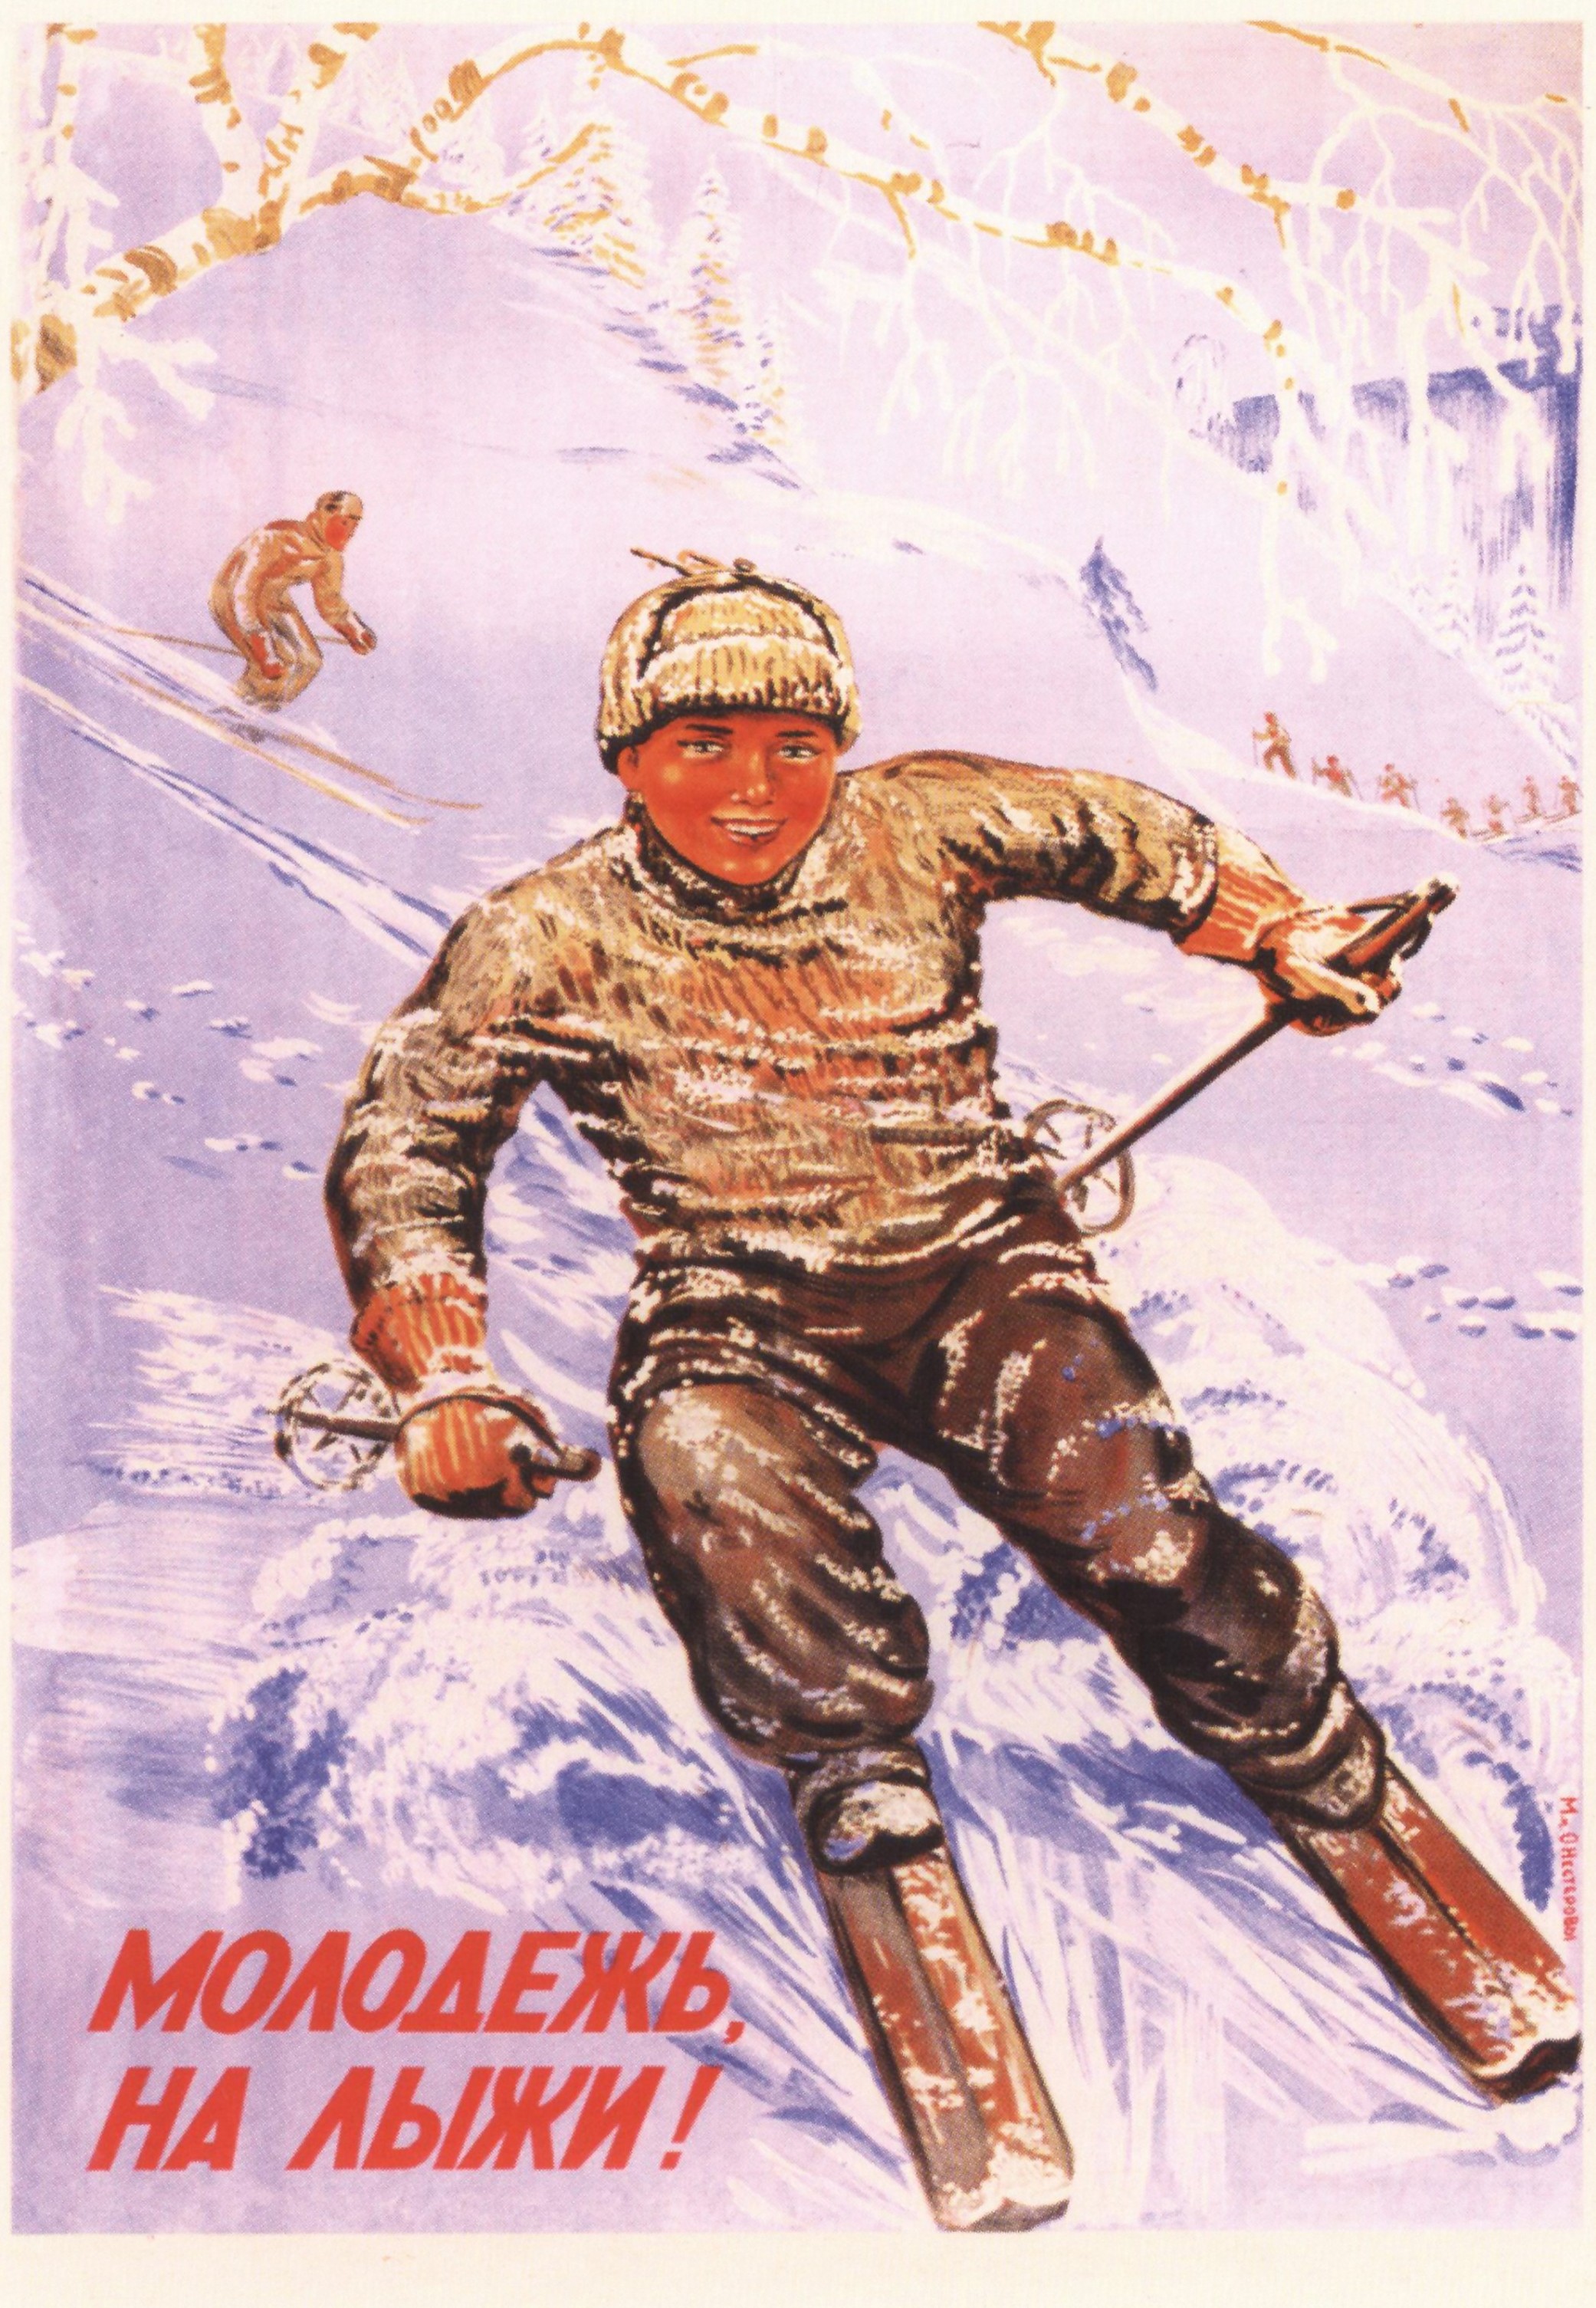 М. А. Нестерова-Берзина. Молодёжь, на лыжи! Плакат, 1945 г.